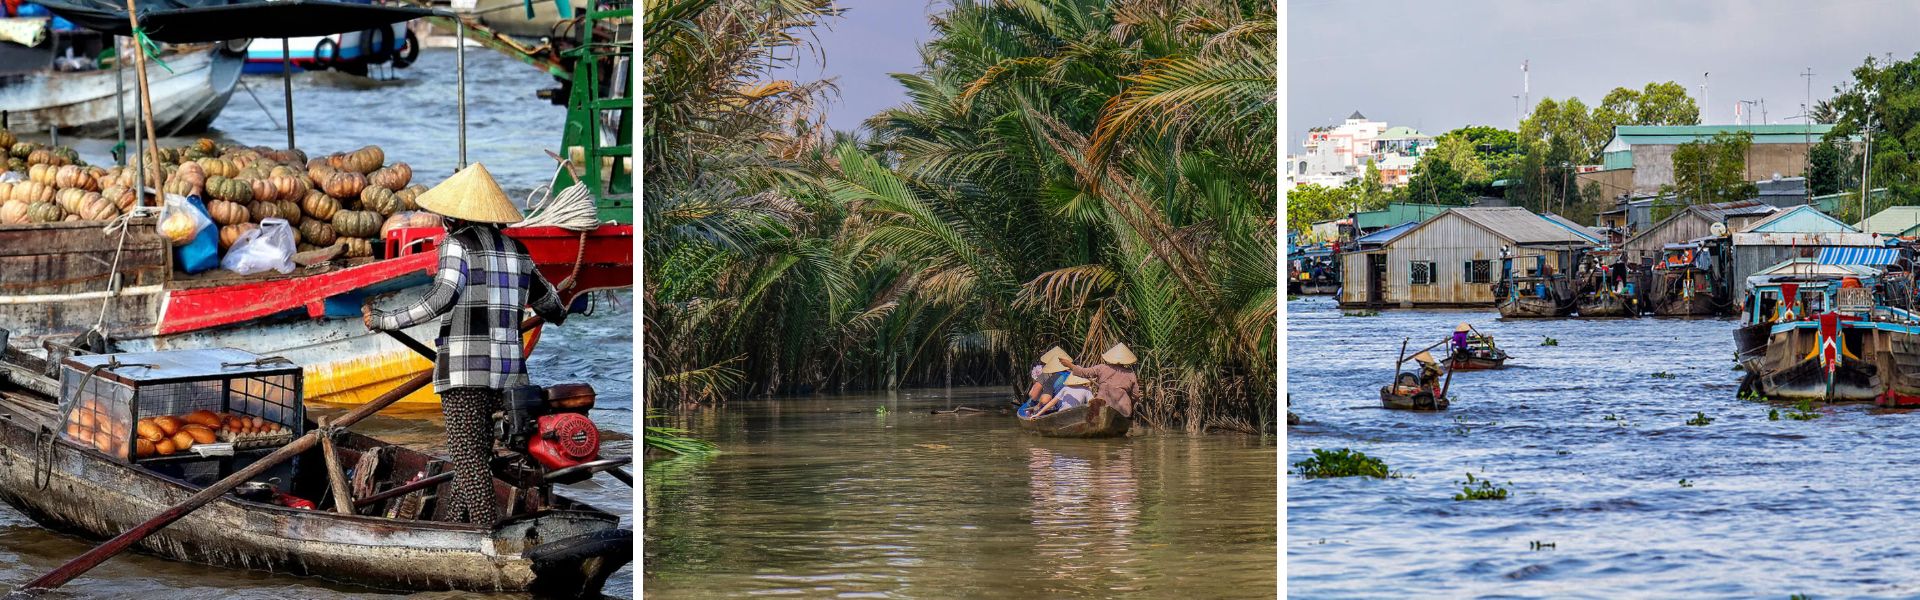 Mekong Delta: Sehenswürdigkeiten und Aktivitäten  |Vietnam Reisen